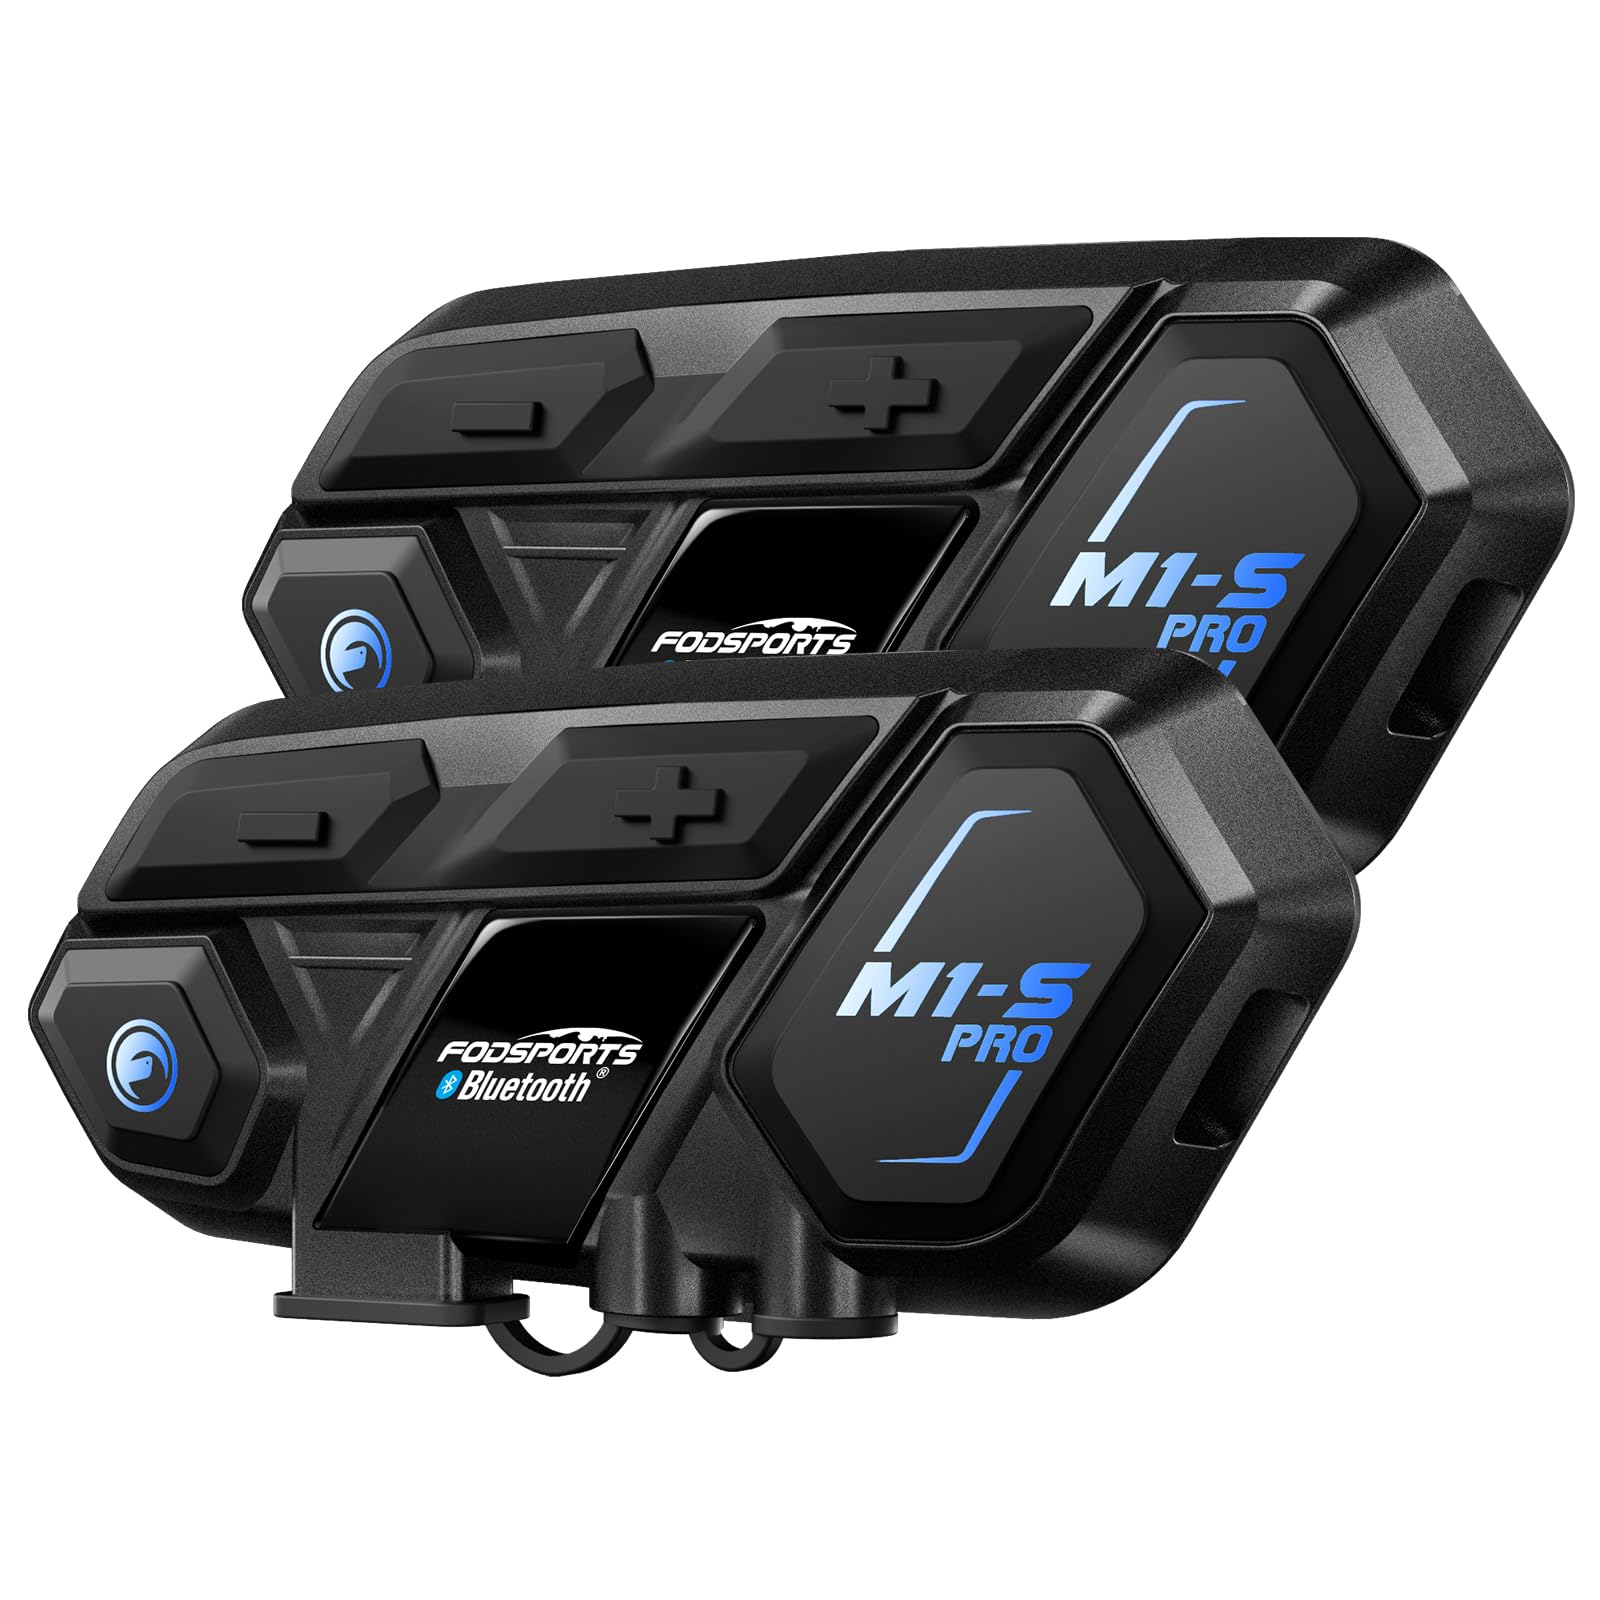 Fodsports M1-S Pro Motorrad Bluetooth Headset, Helm Intercom mit Geräuschunterdrückung, 900mAh, Motorradhelm Gegensprechanlage Kommunikationssystem mit 8 Teilnehmern, GPS, FM Radio, Wasserdichtes